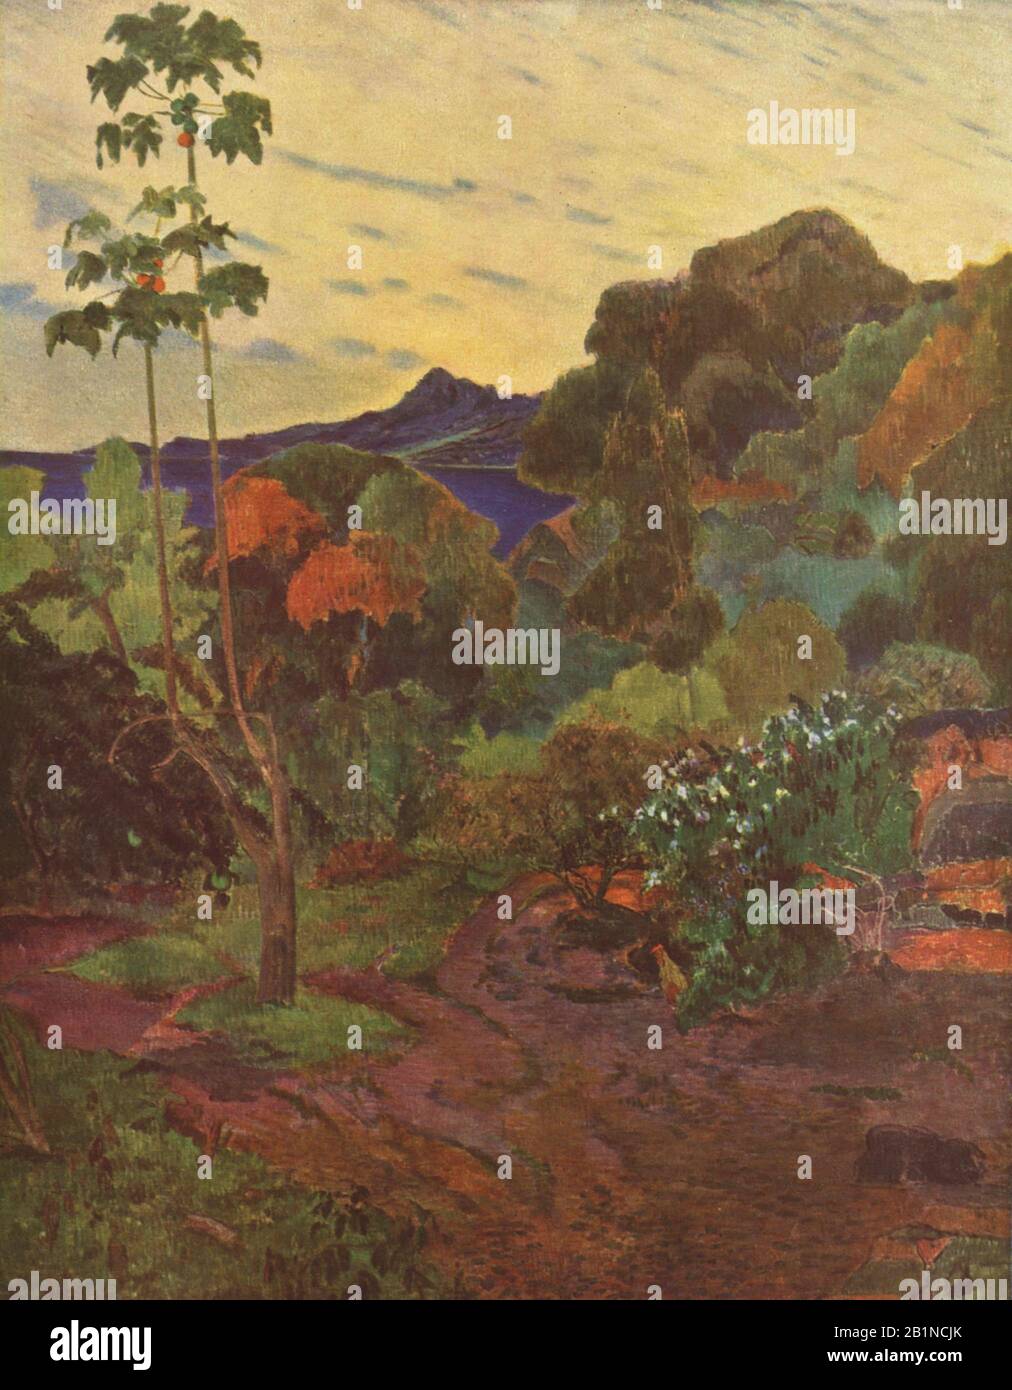 Vegetazione tropicale (Végétation tropicale) Martinique Paesaggio (1887) 19th Secolo Pittura di Paul Gauguin - Immagine Ad Altissima risoluzione e qualità Foto Stock